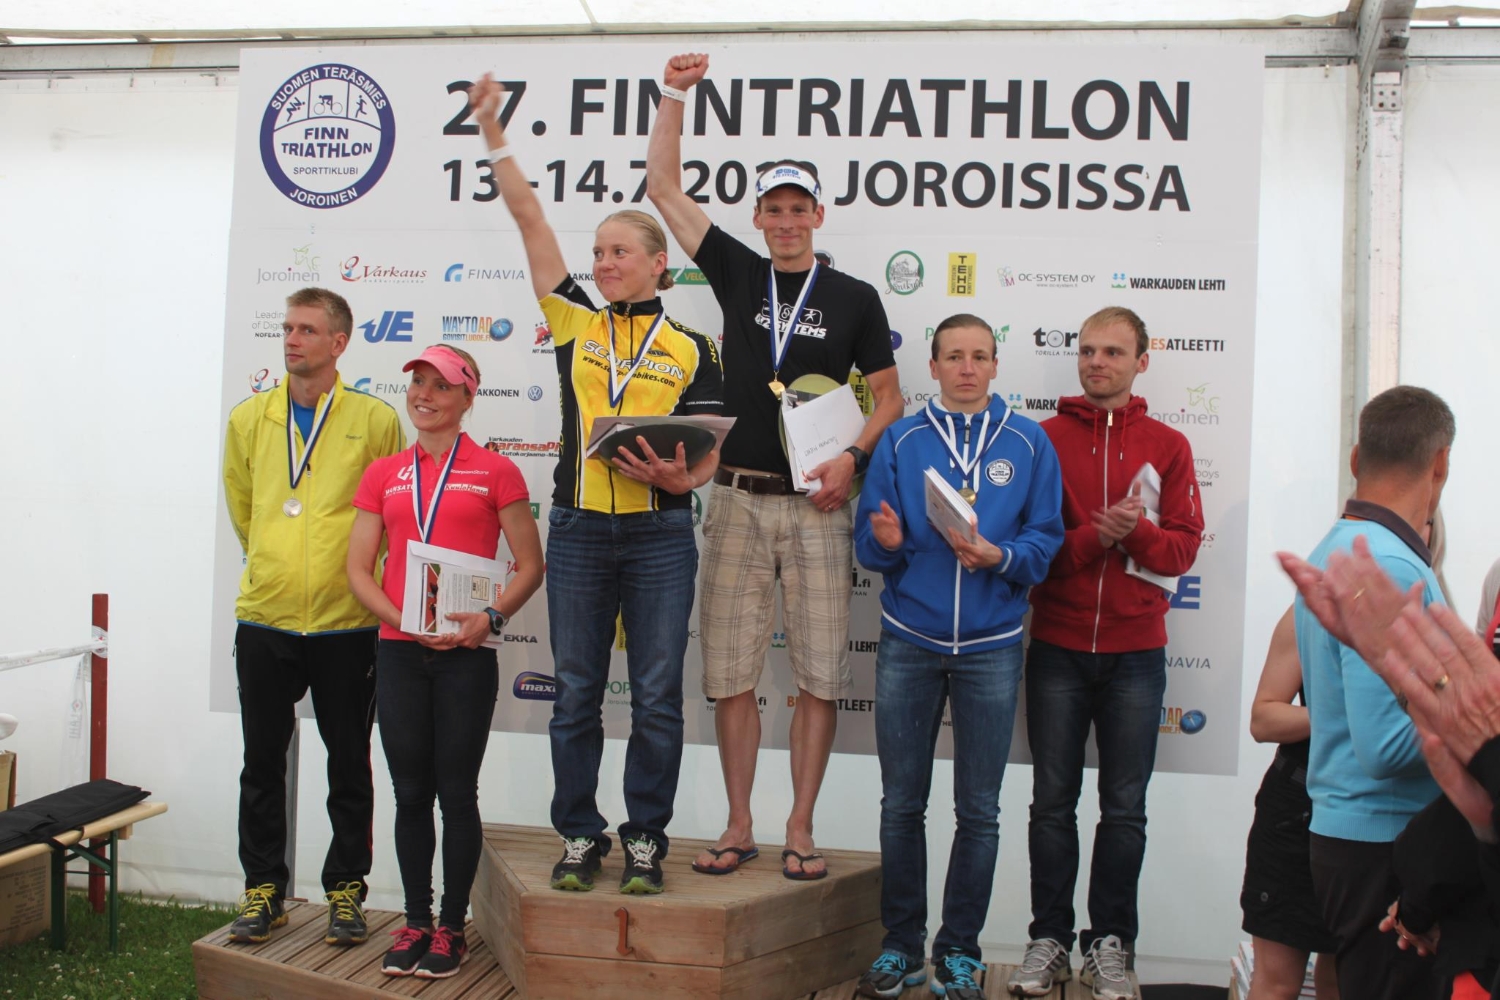 Joroisilla ratkaistiin triathlonin puolikkaiden matkojen Suomen mestaruudet. Matkana oli 1,9 km uintia, 90 km pyöräilyä ja vielä 21,1 km juoksua. Teamimme triathlon-naiset olivat taas odotetun vahvoja. Merja Kiviranta nappasi tällä kertaa mestaruuden ja Kaisa Lehtonen hopeamitalin. Pari viikkoa sitten sprinttimatkalla järjestys oli toisin päin. Kuva otettu palkintojenjaosta, jossa on samalla palkittuna sekä naisten että miesten kärki. Lämpimät onnittelut hienoista suorituksista!